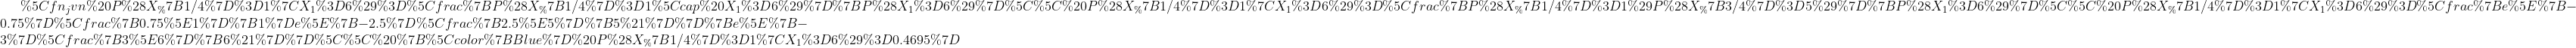 P(X1/4 1X1 6) = X1 /4= 1 nx1 6) P(X1 6) P(X1/4 1X1 6) = PX1/4= 1)P(X3/4 = 5) P(X1 6) e-0.750.75-2.5 2.55 5! P(X1/4 1X1 6) 1 e